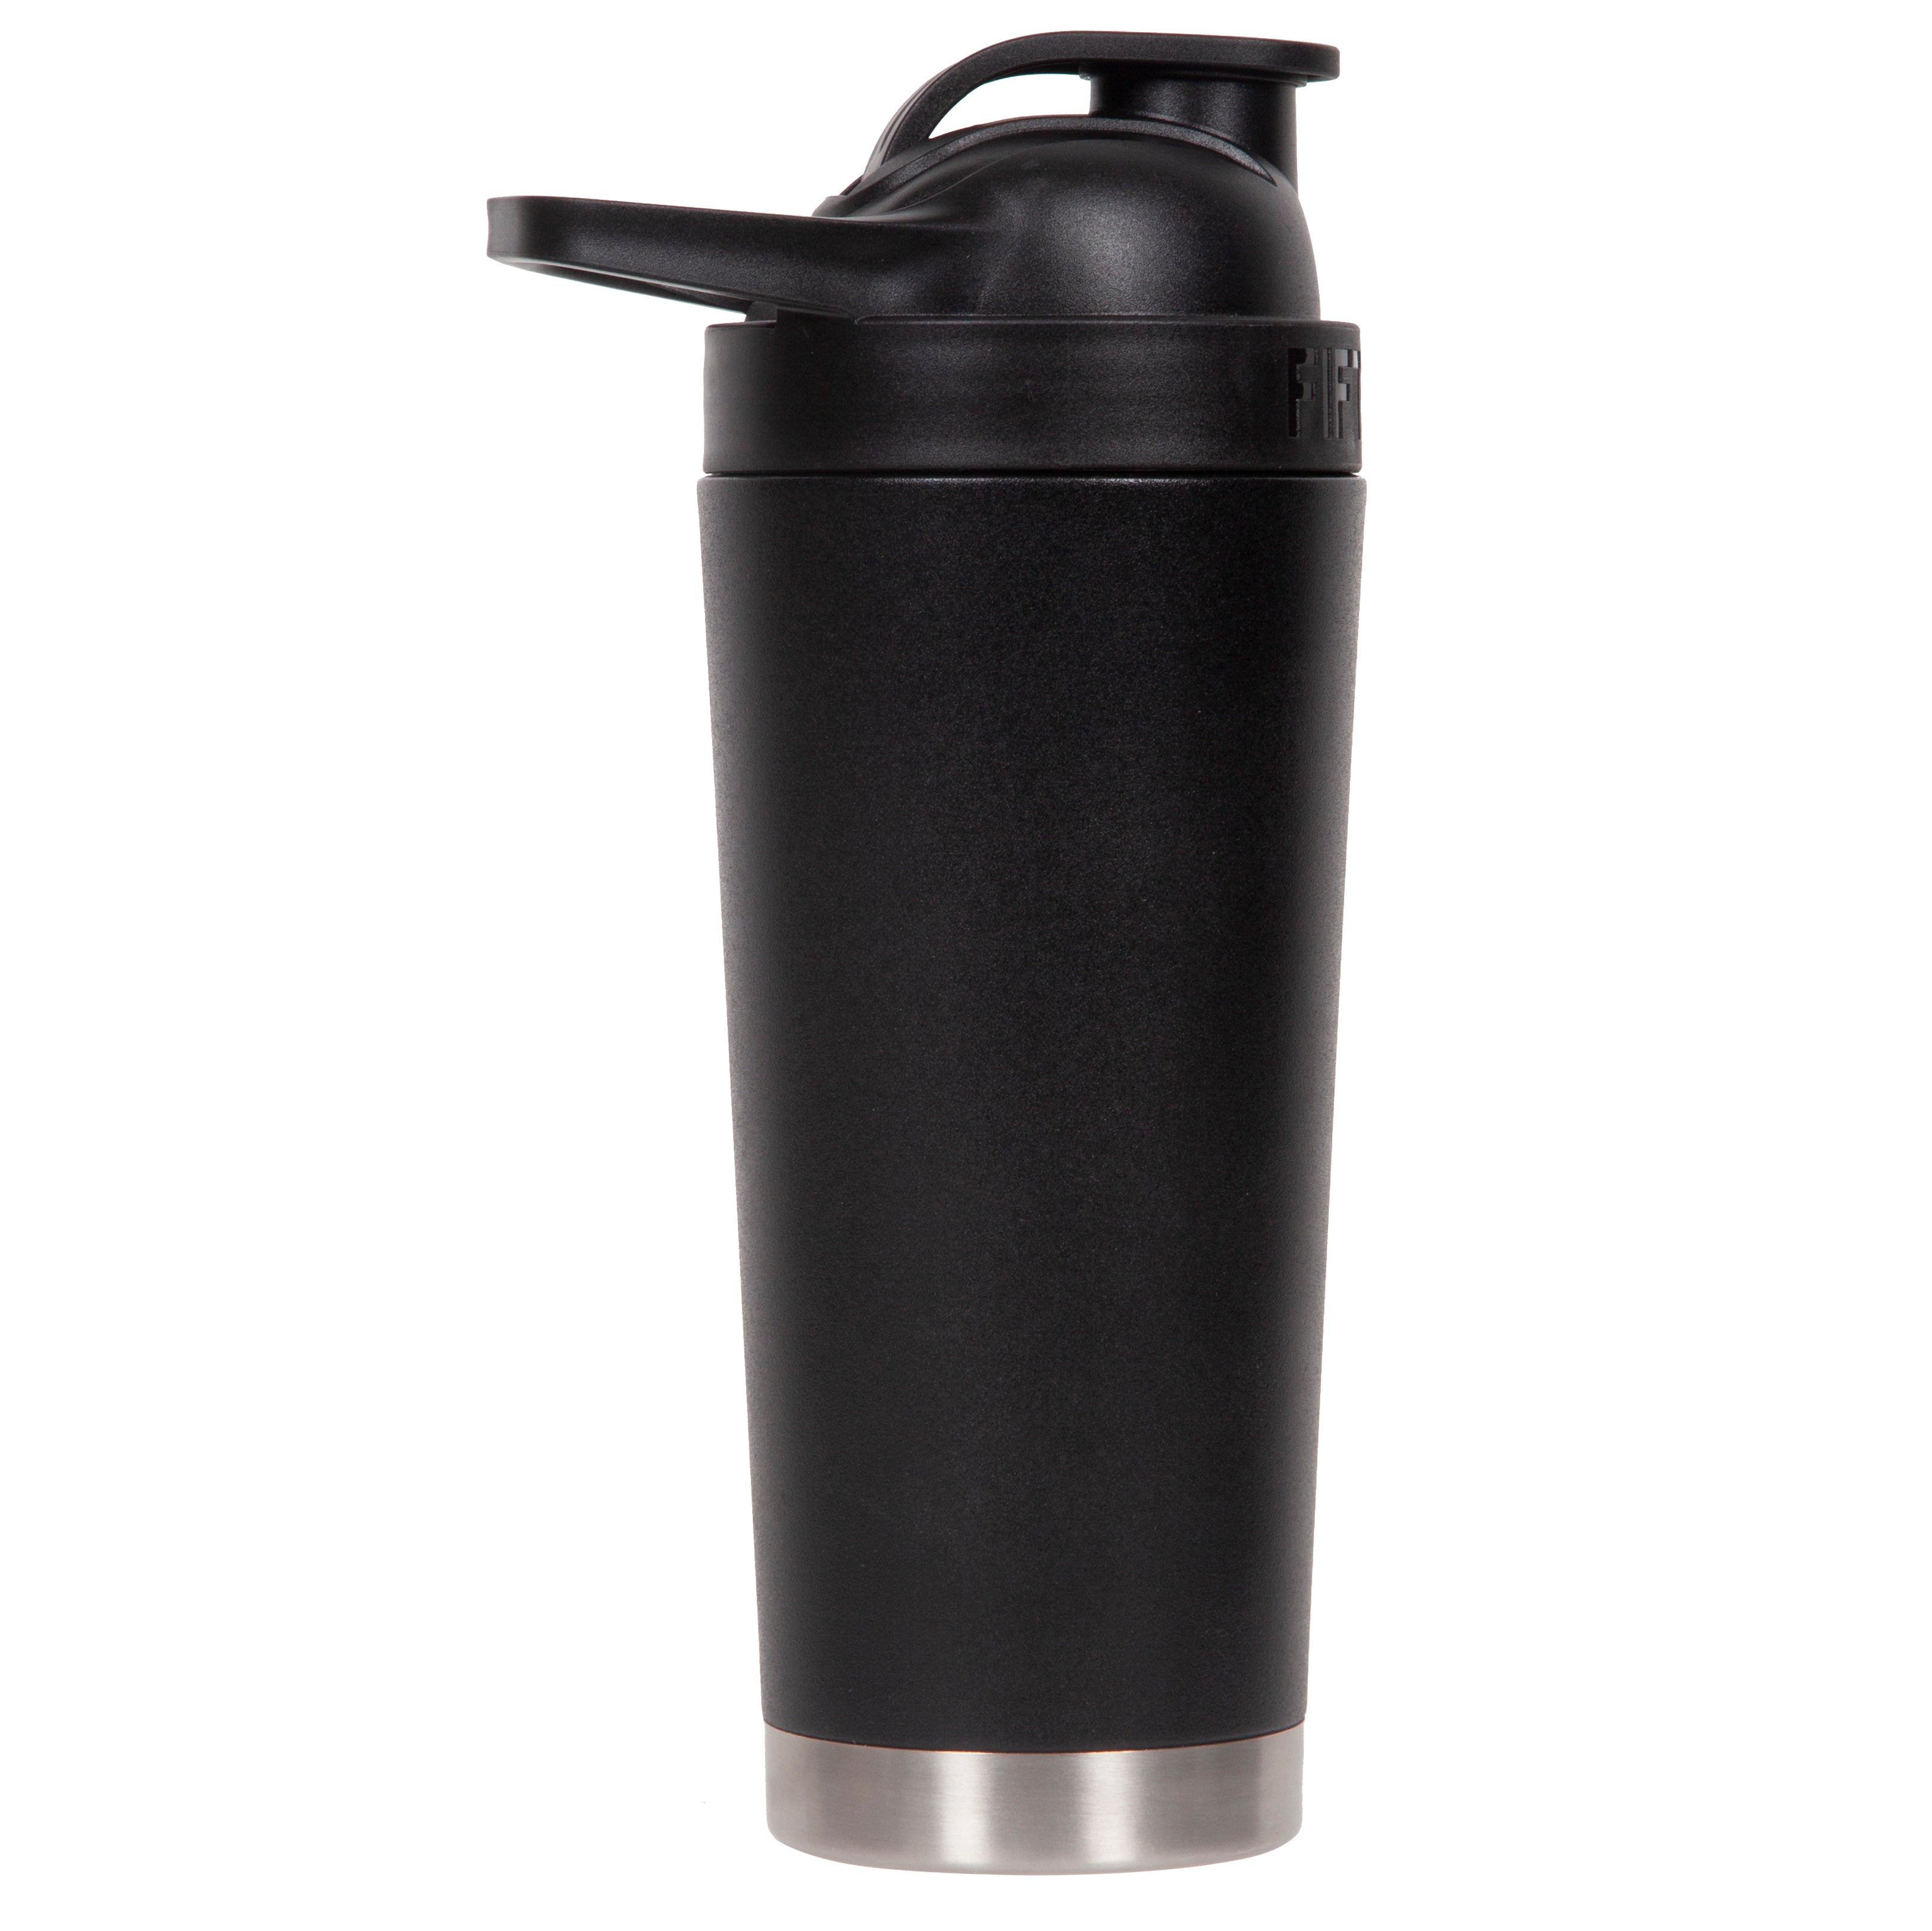 Stainless Steel Protein Shaker Bottle Metal Shaker with Blender